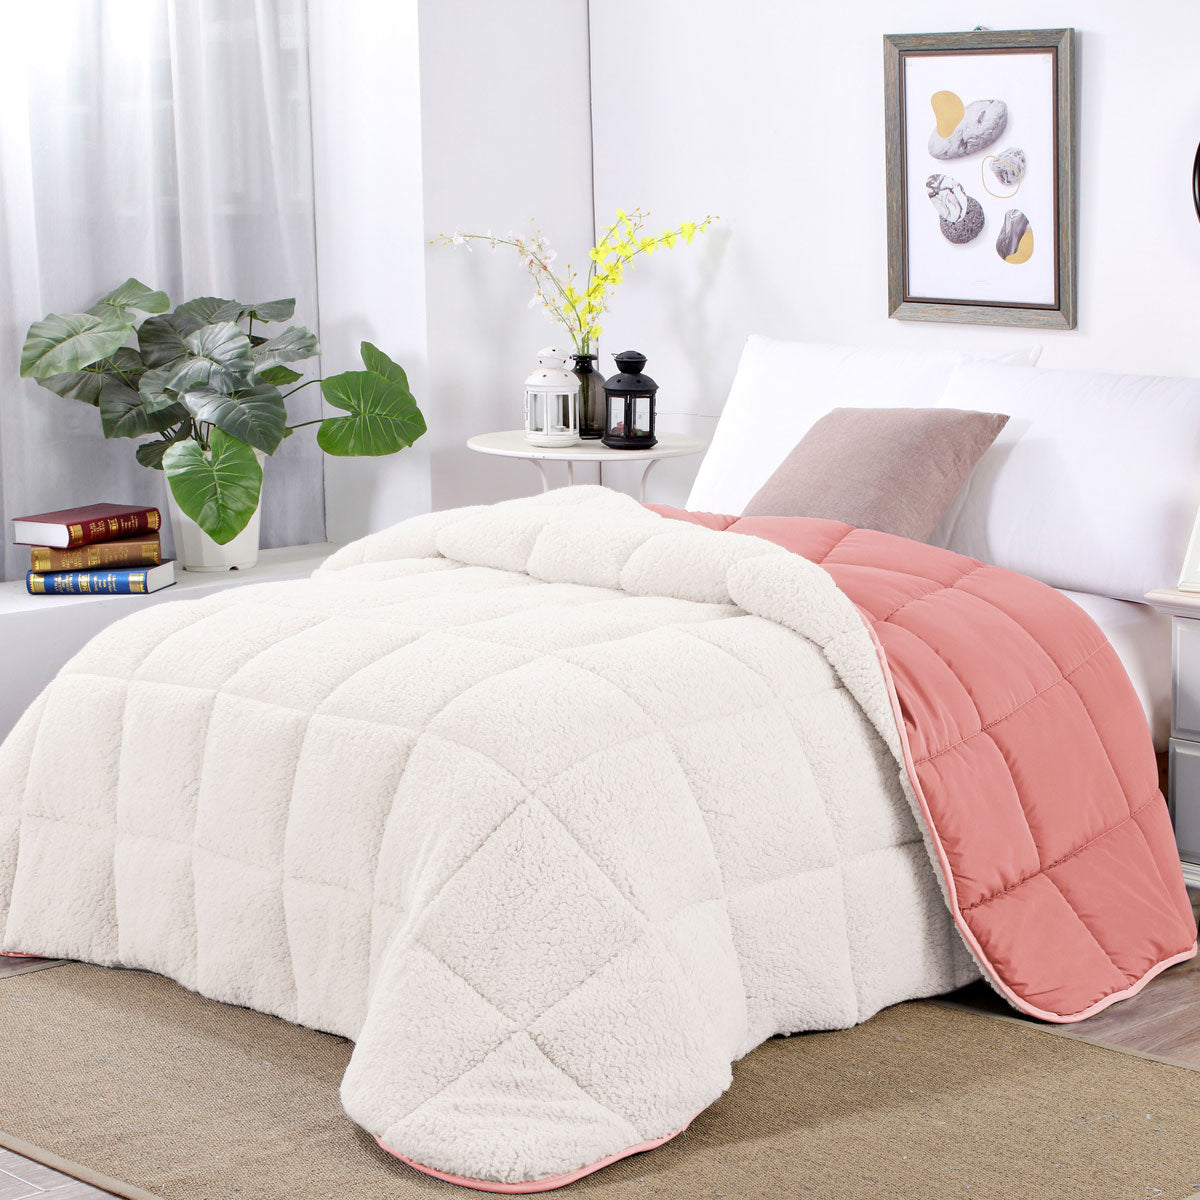 King Shangri La Rose Tan Sherpa Fleece Reversible 3 Pcs Comforter Set - White/Pink